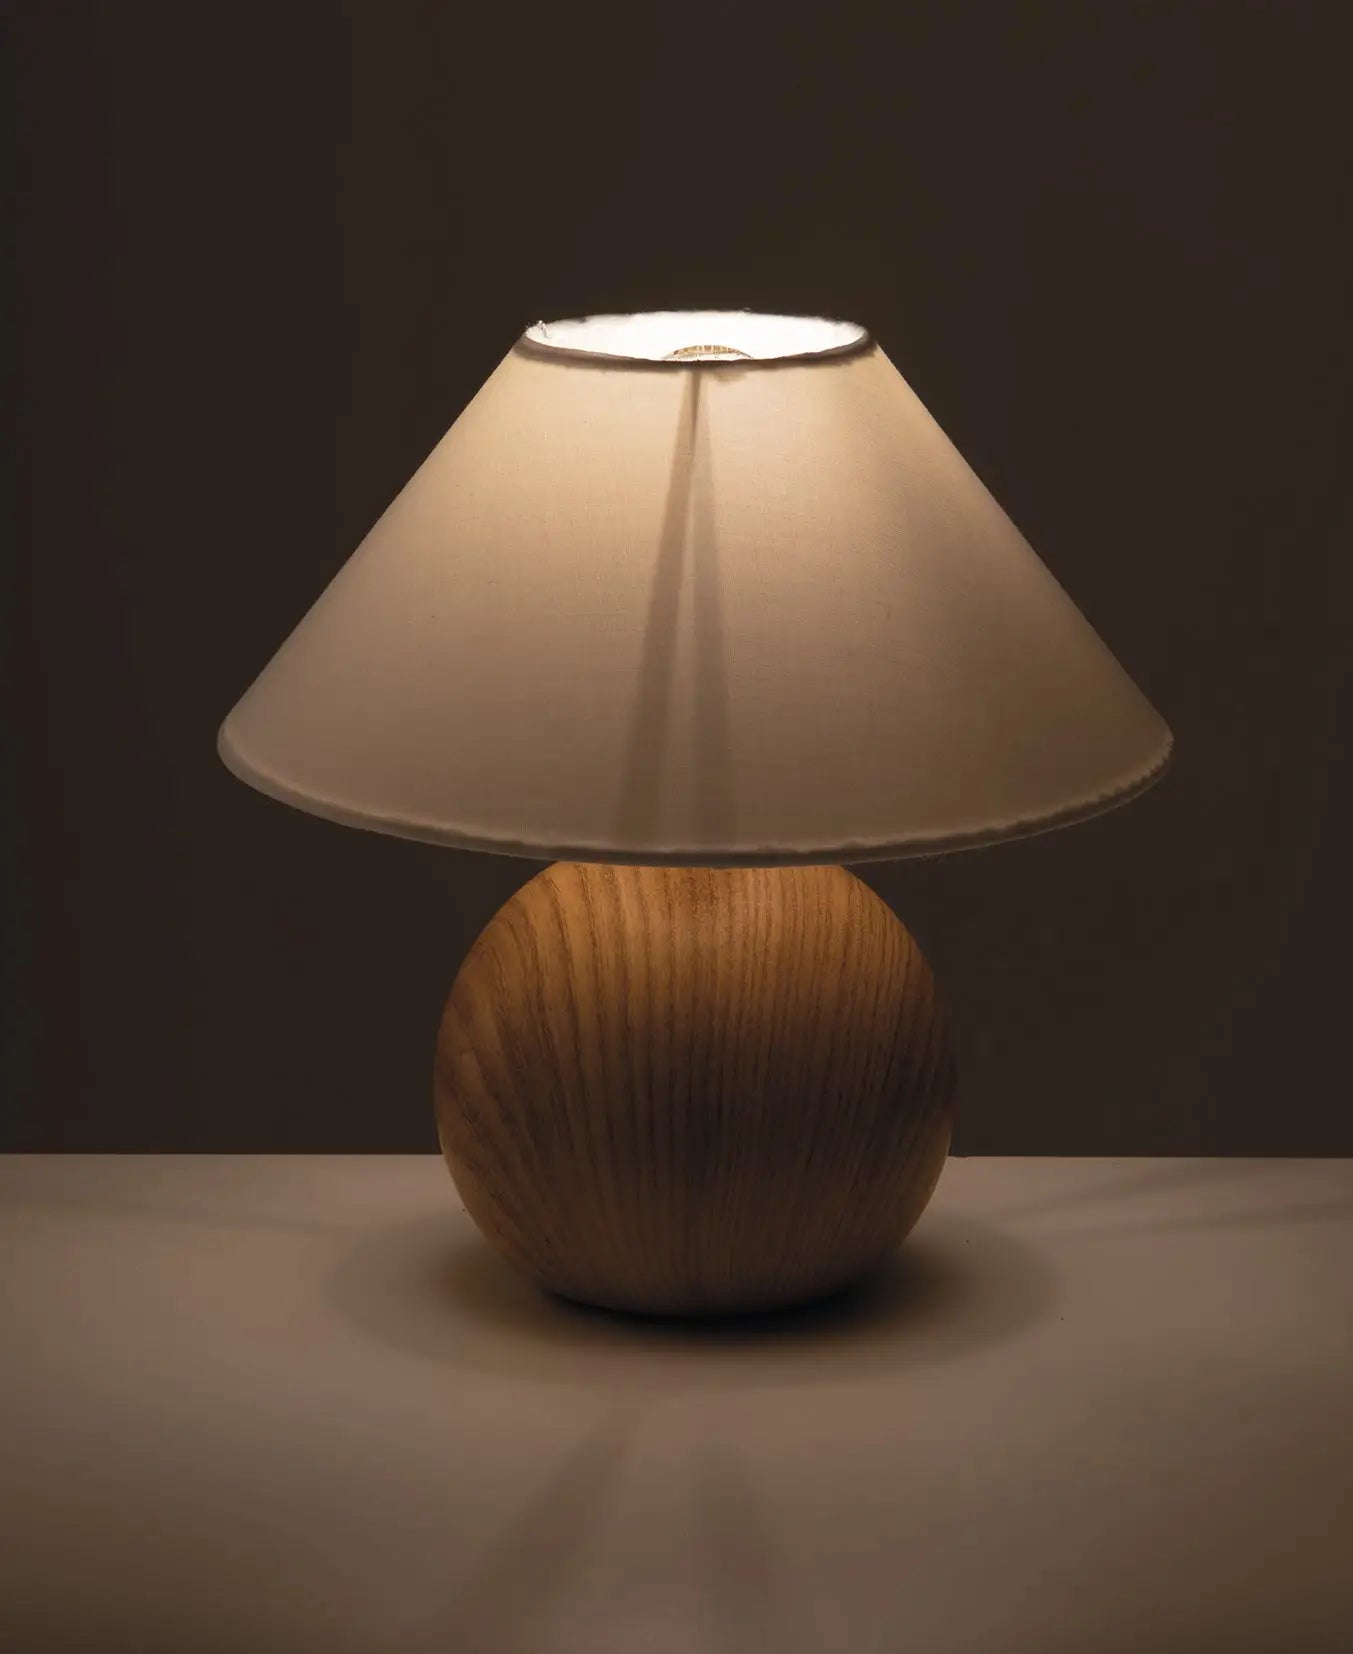 Natürliche Eleganz: Tischlampe mit Keramiksockel und Stofflampenschirm